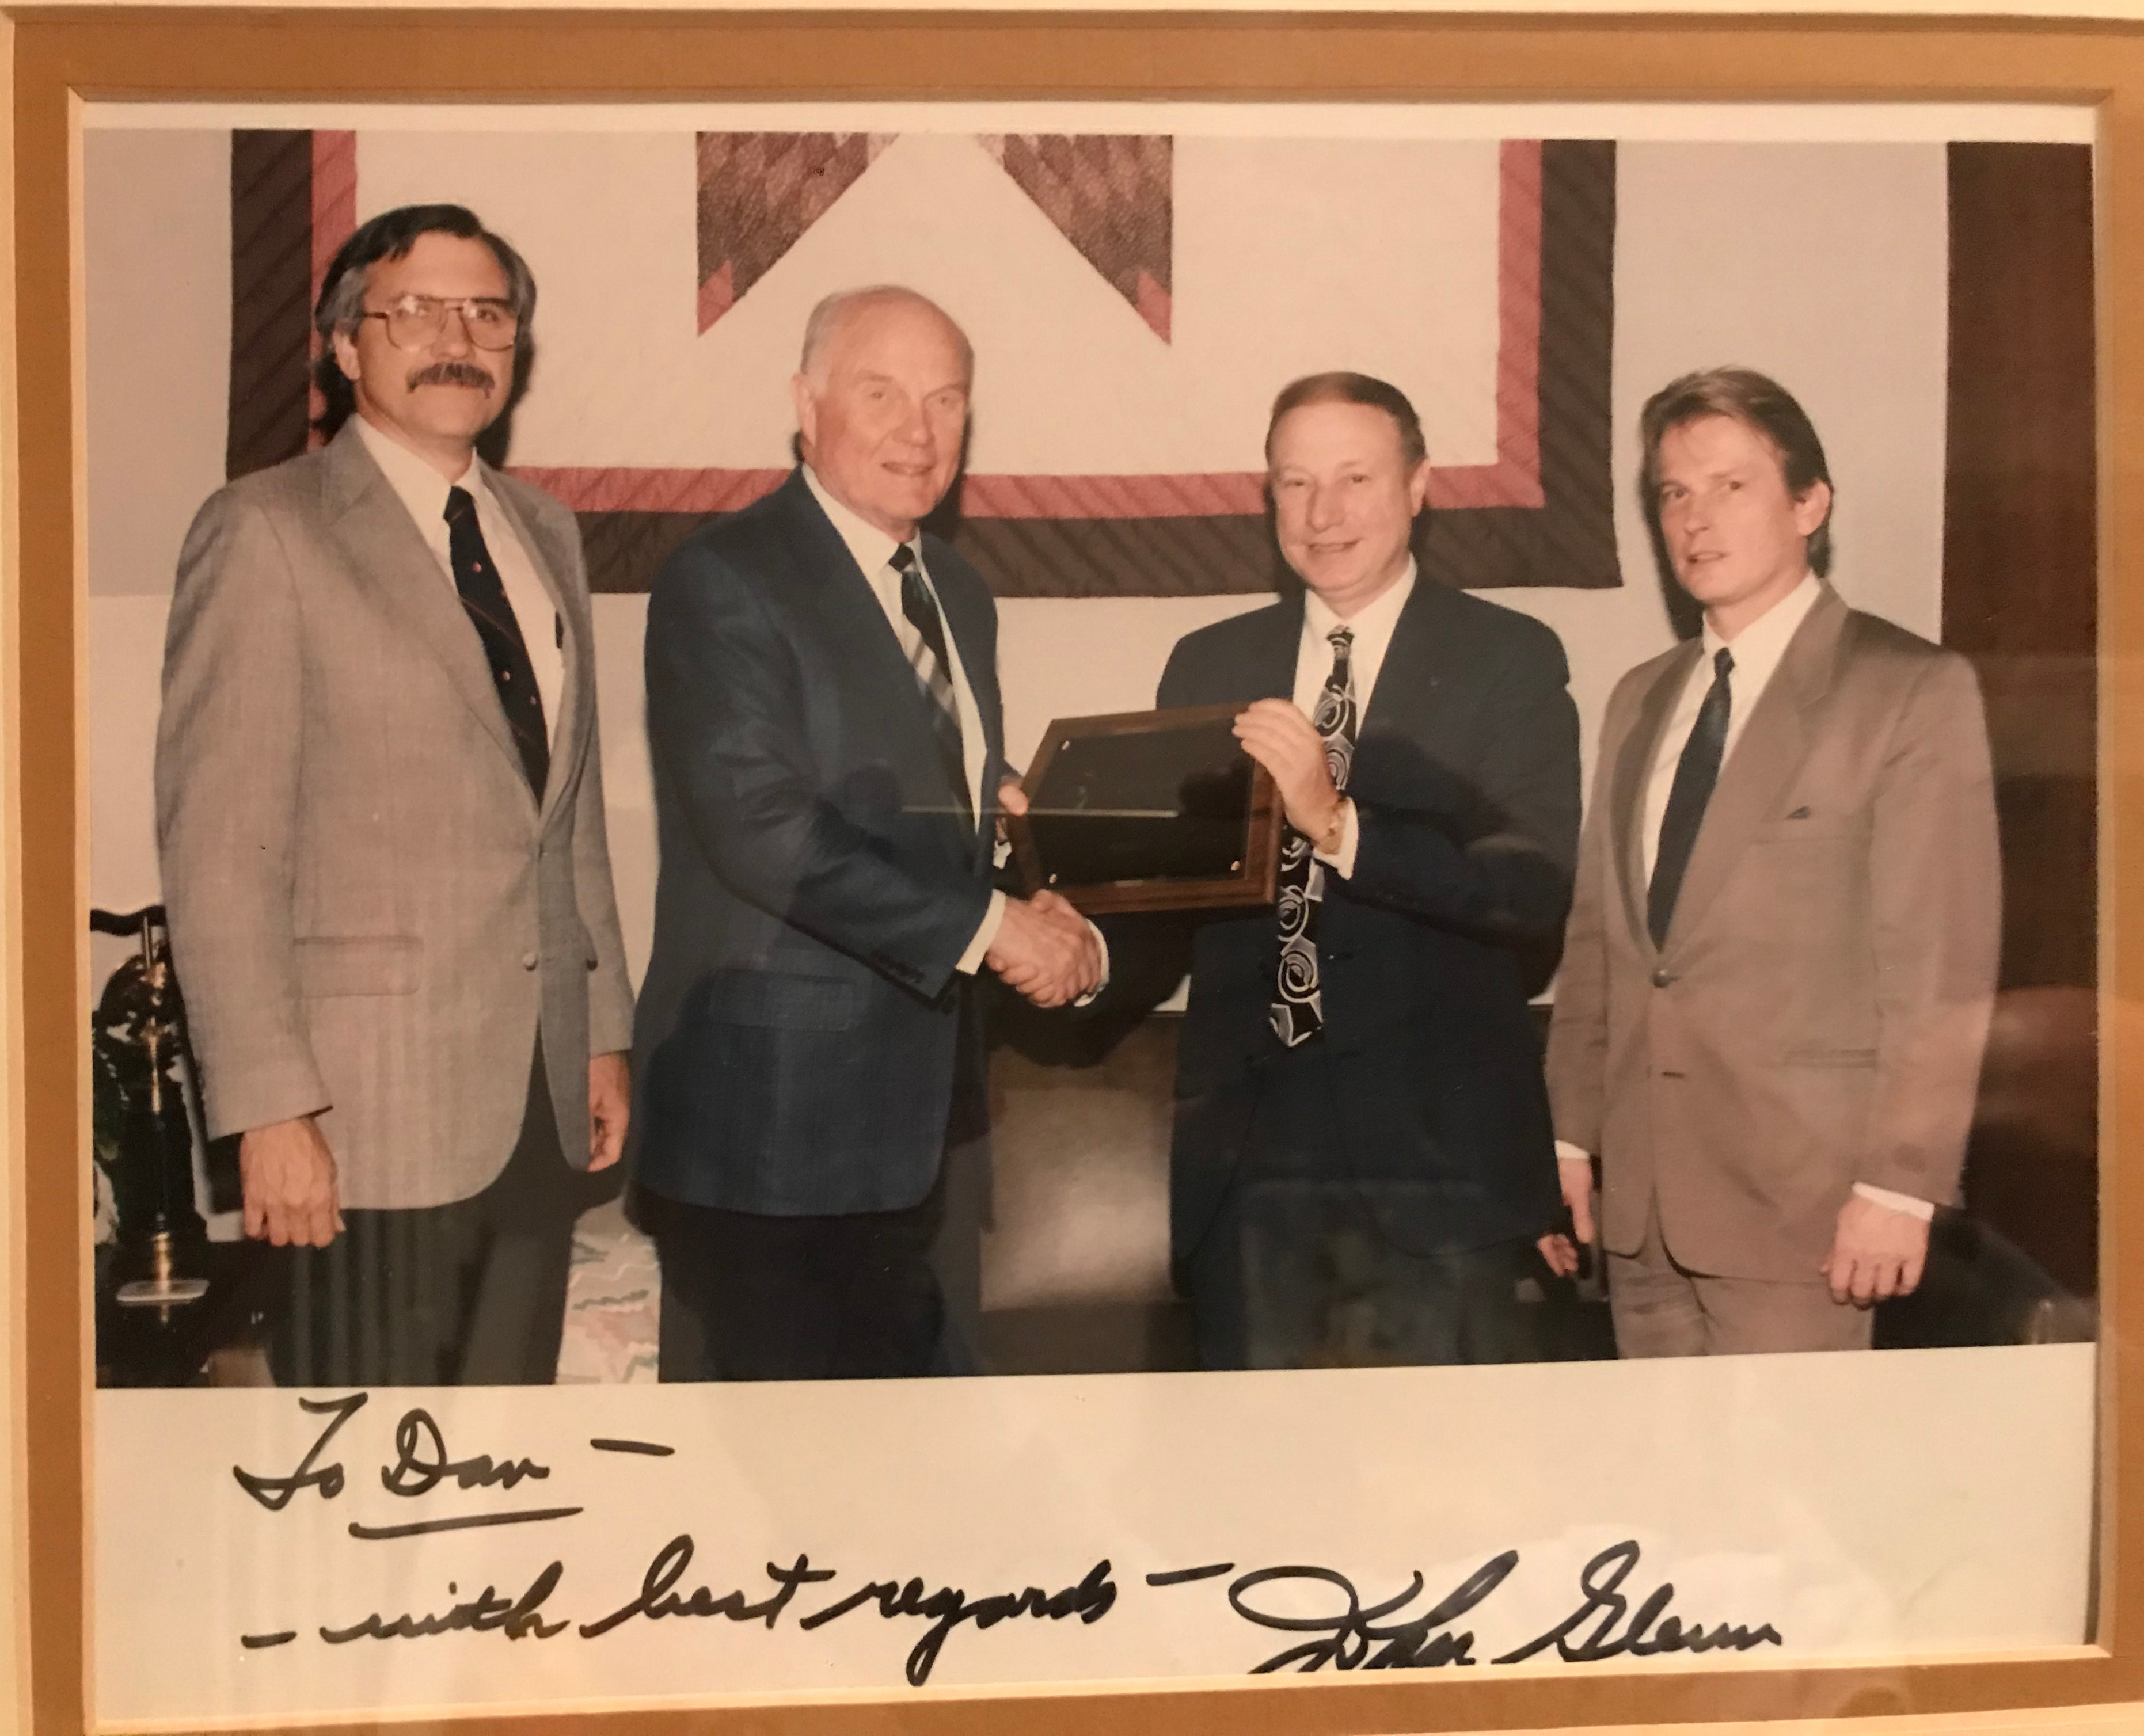 (left to right) Larry Good, Senator John Glenn, Albert Tuman, and Dan Williams